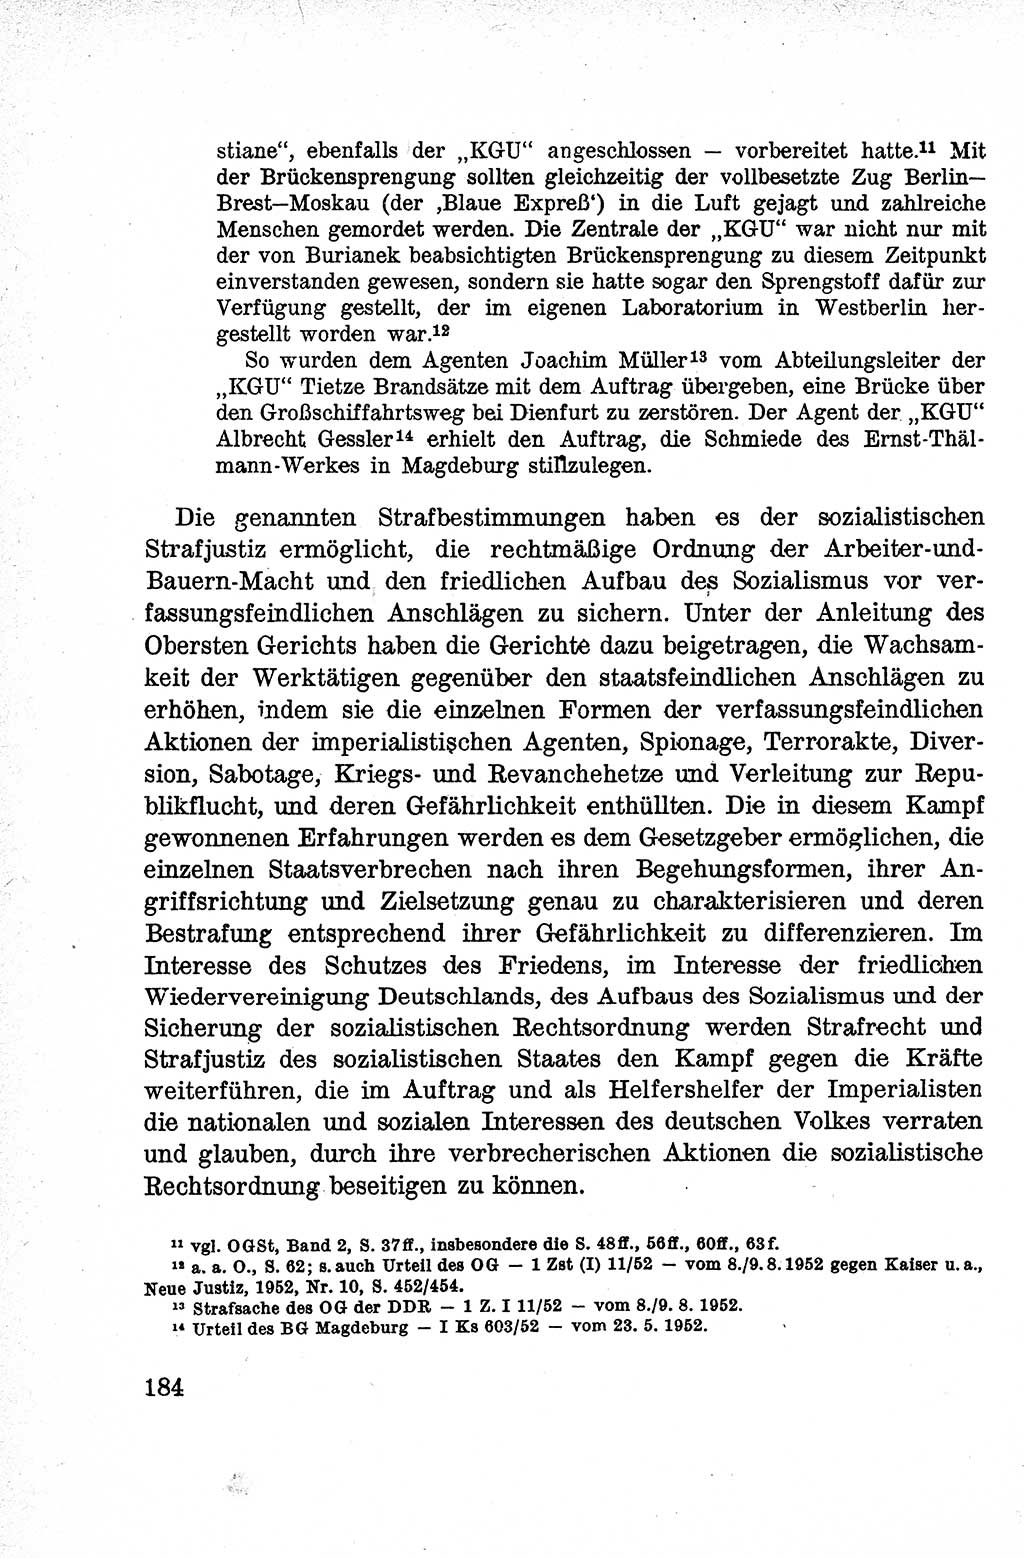 Lehrbuch des Strafrechts der Deutschen Demokratischen Republik (DDR), Allgemeiner Teil 1959, Seite 184 (Lb. Strafr. DDR AT 1959, S. 184)